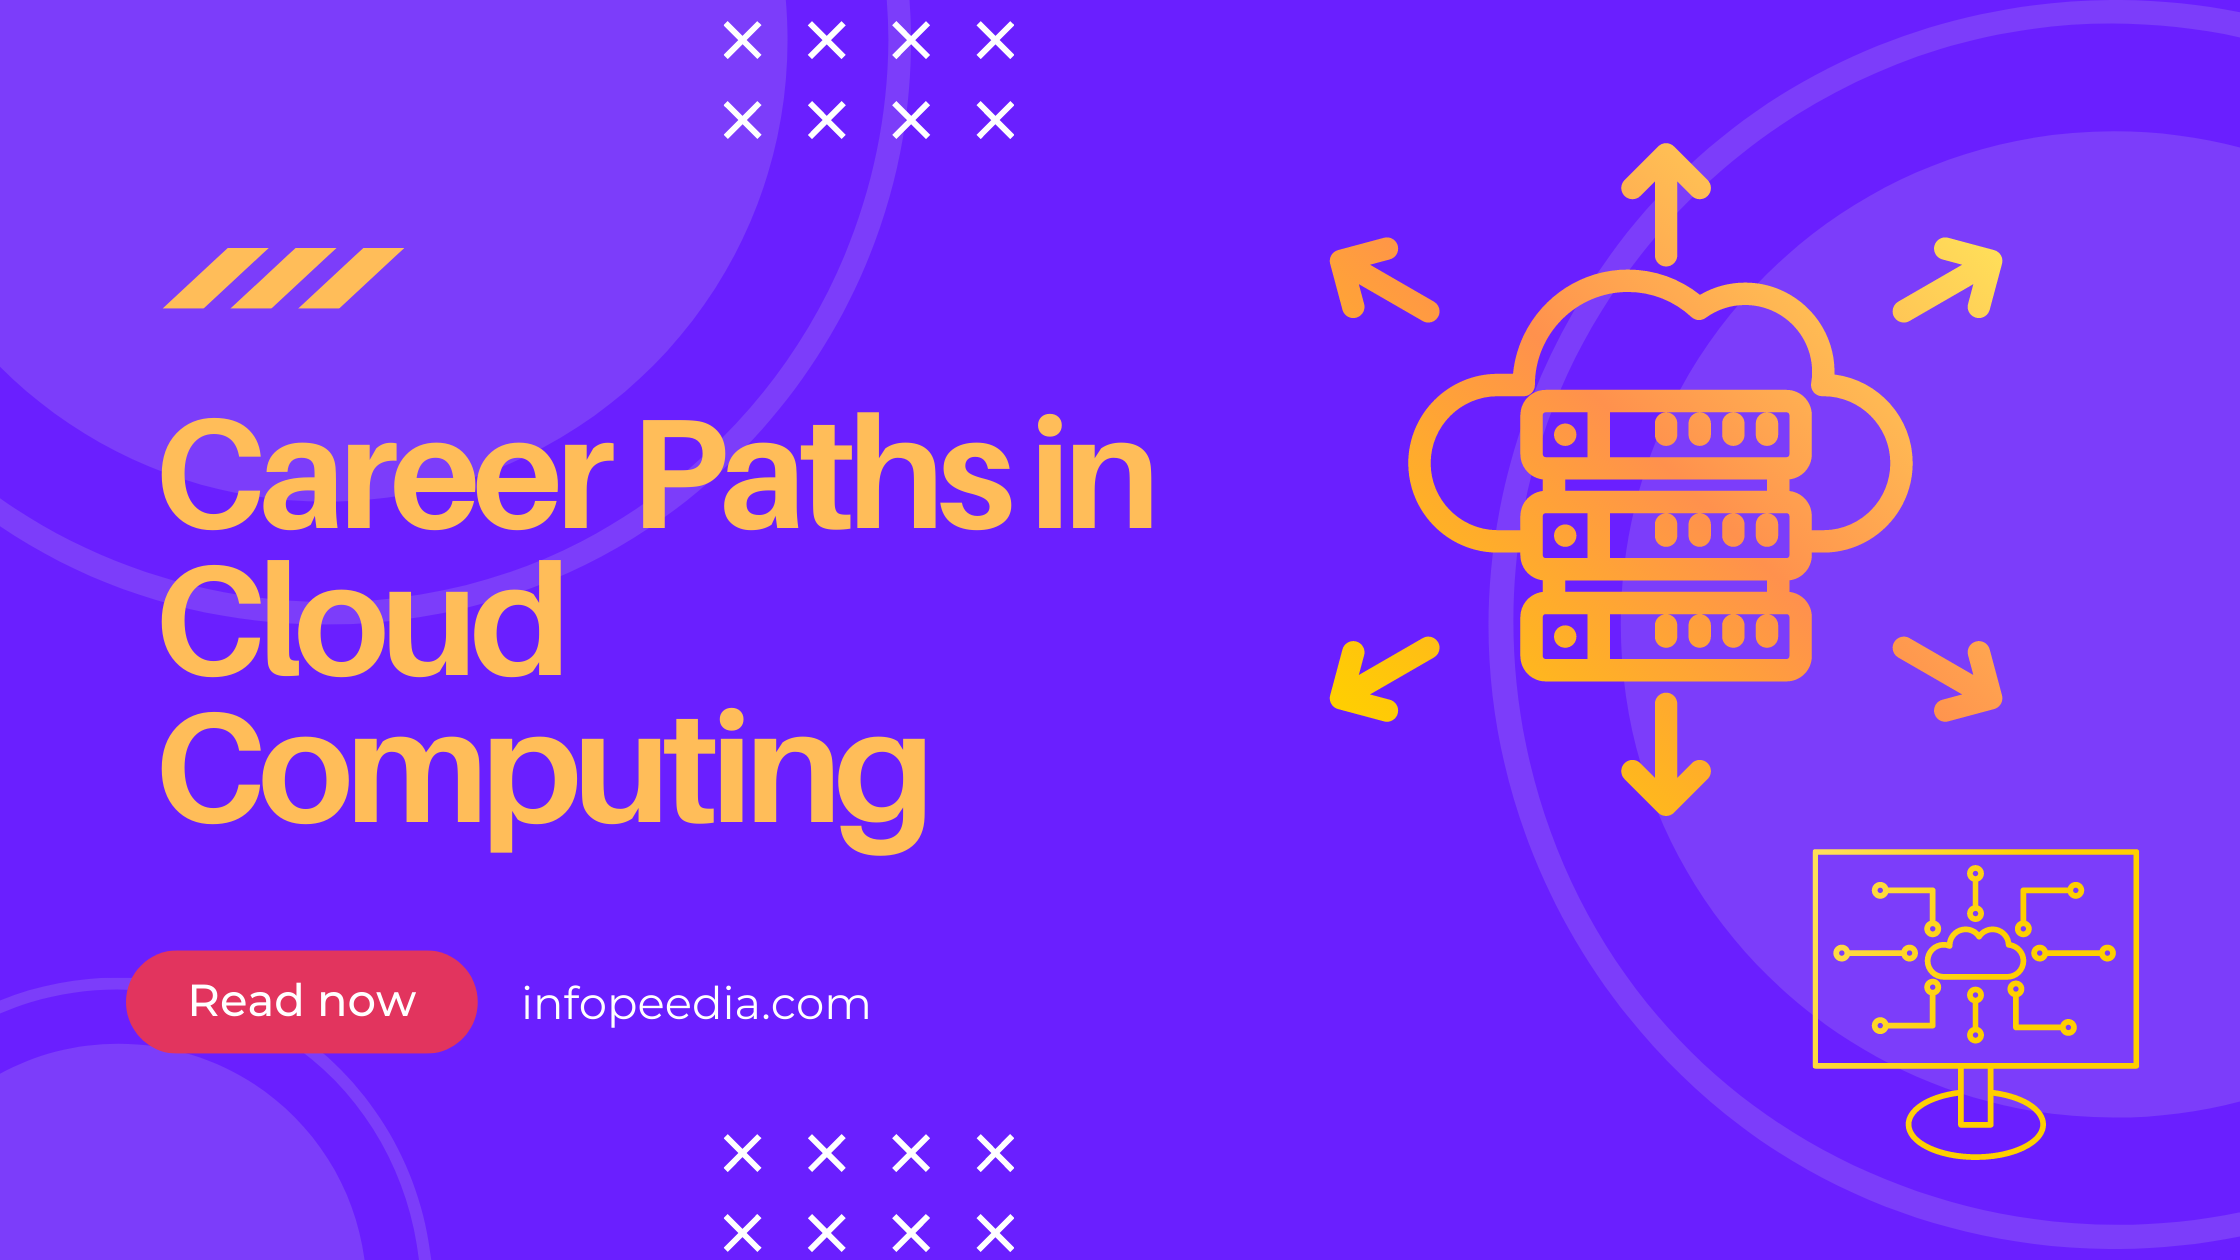 Career Paths in Cloud Computing